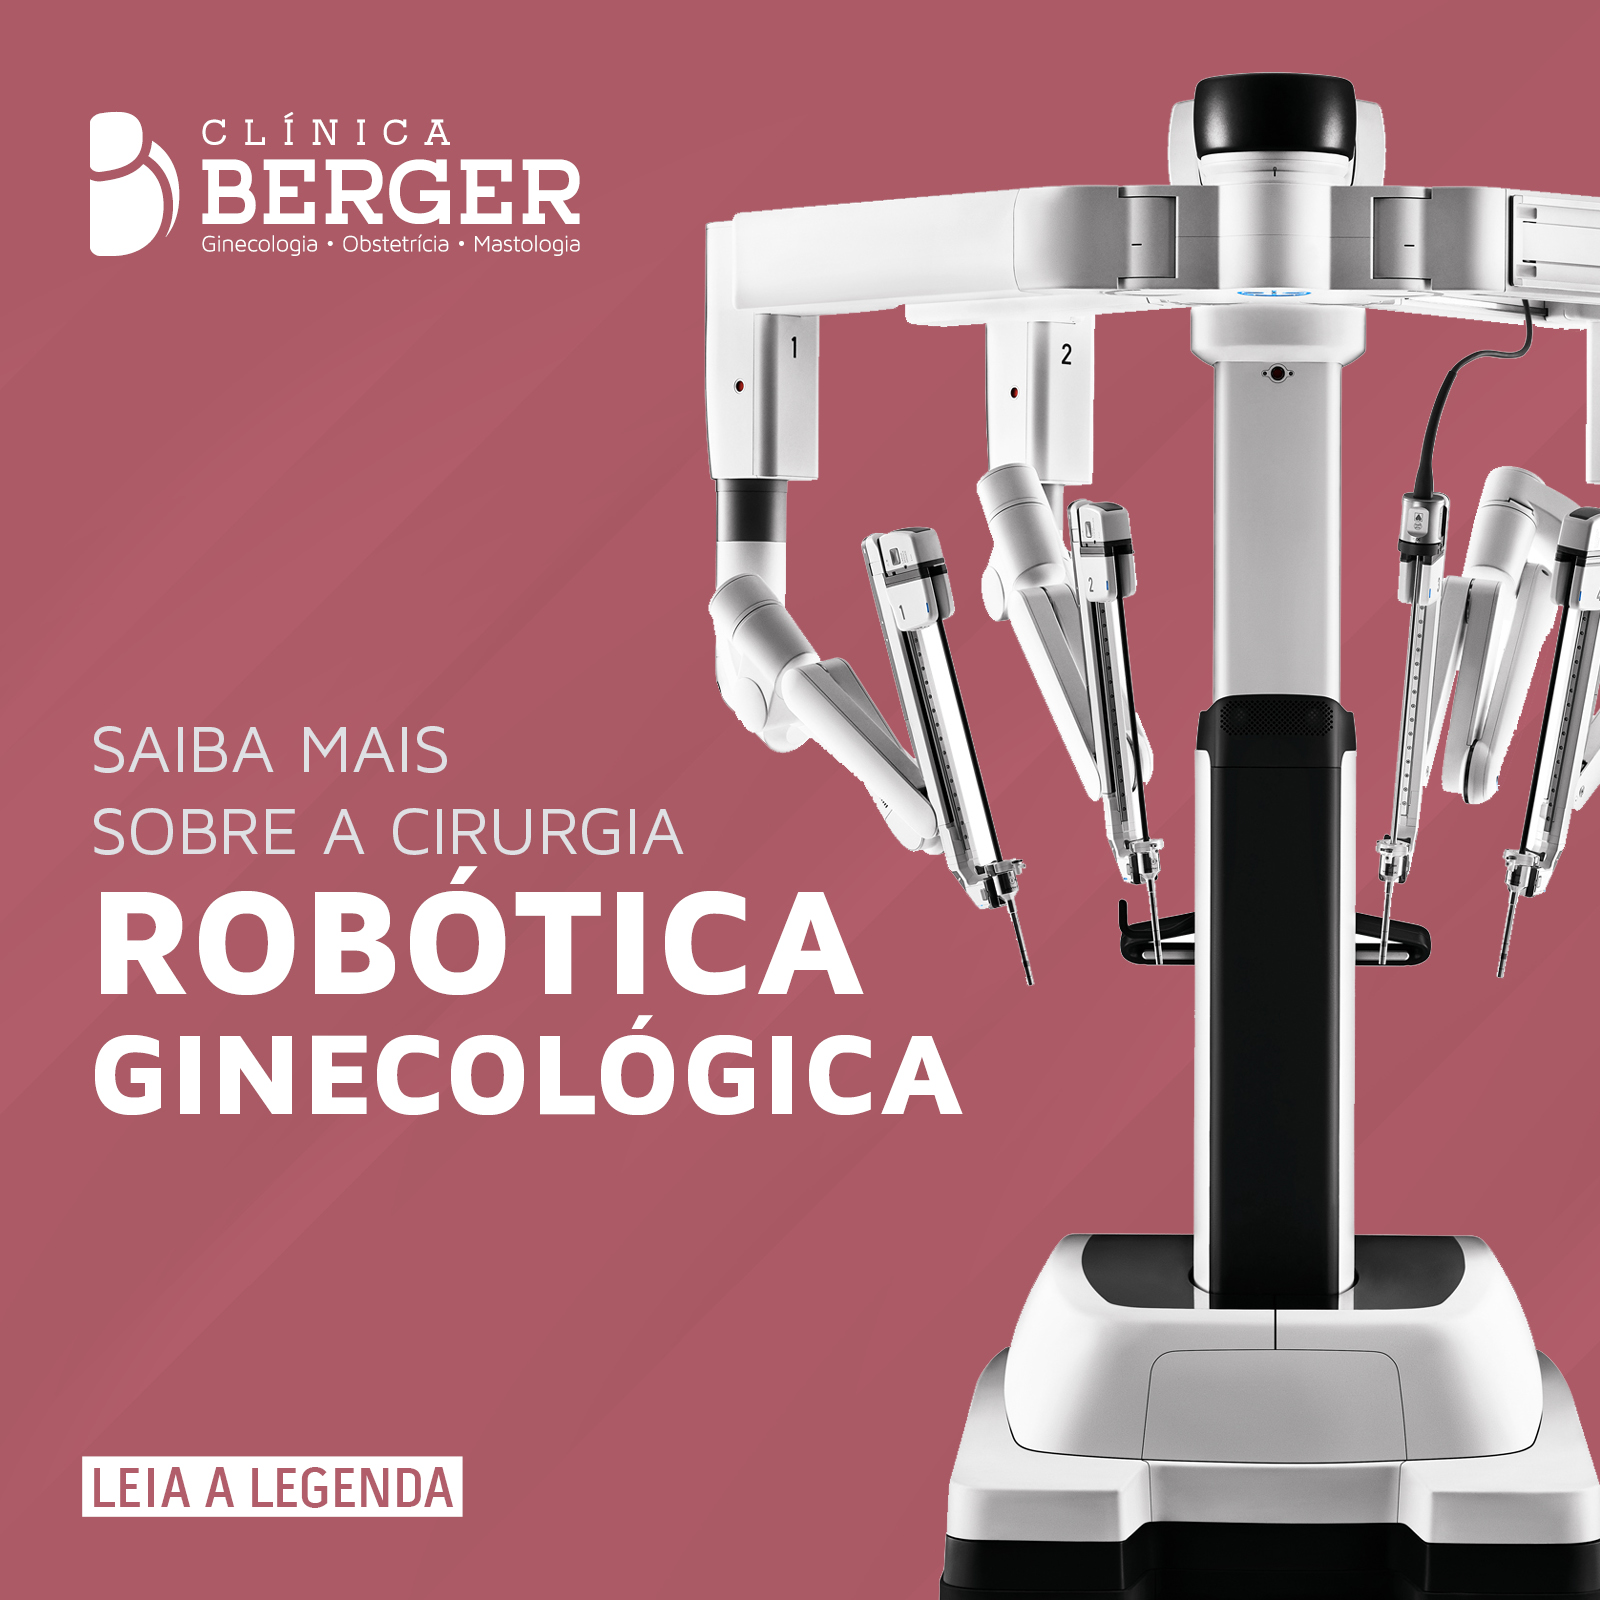 Saiba mais sobre a cirurgia robótica ginecológica